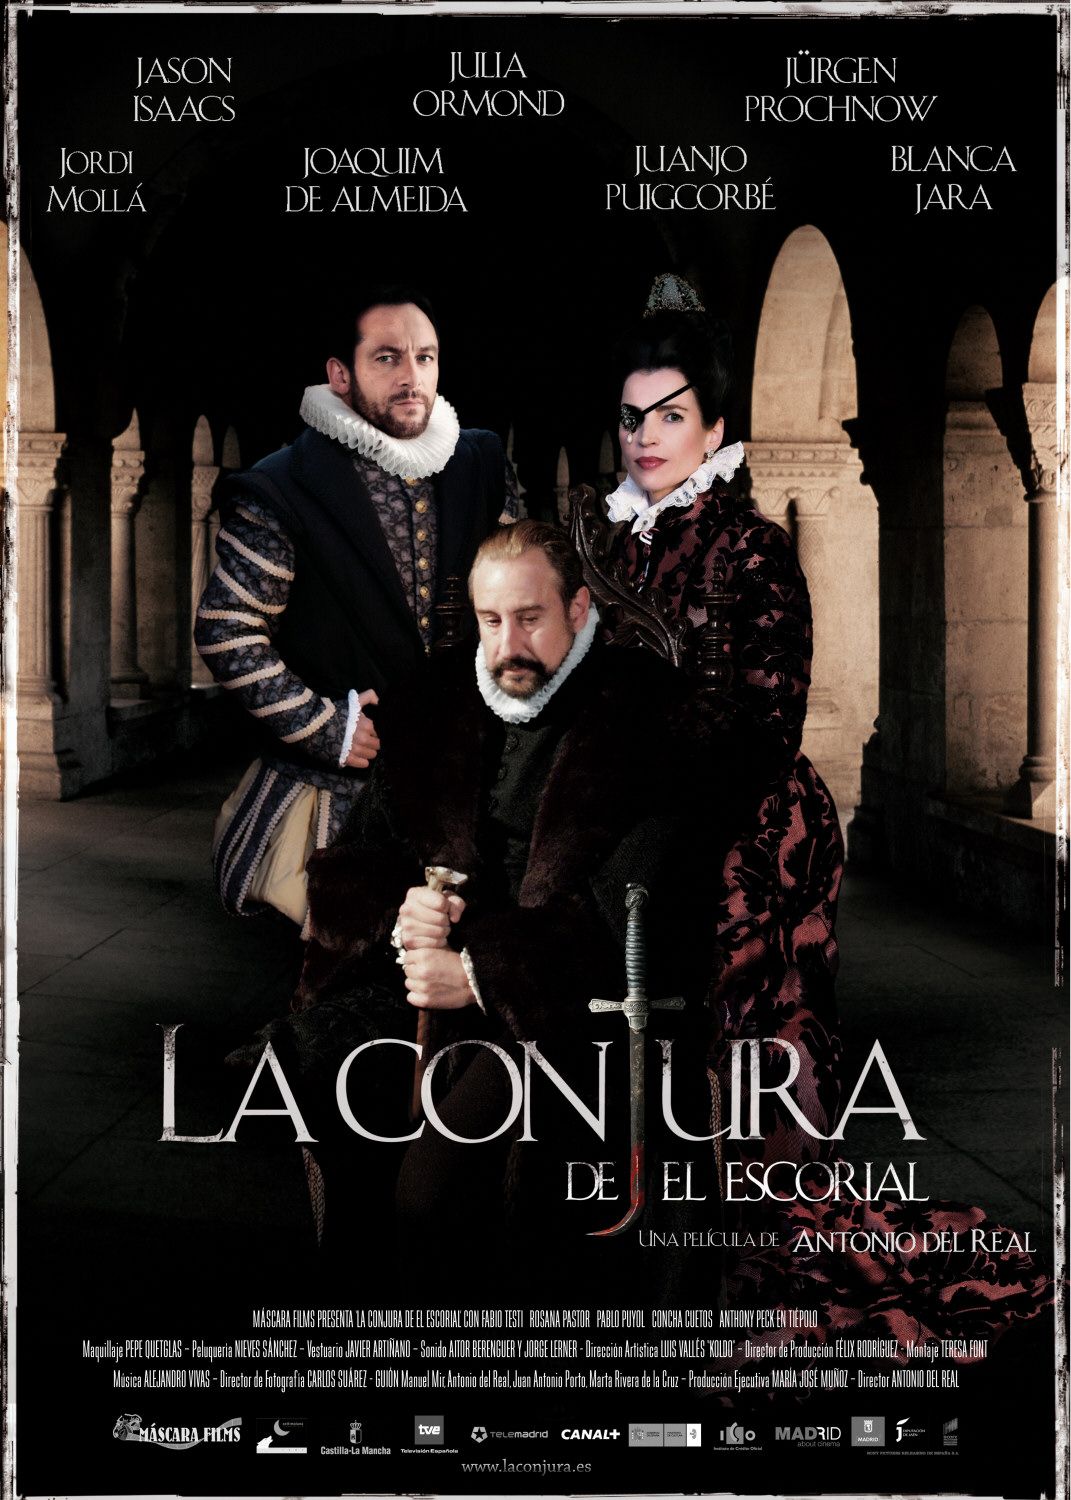 Extra Large Movie Poster Image for Conjura de El Escorial, La 